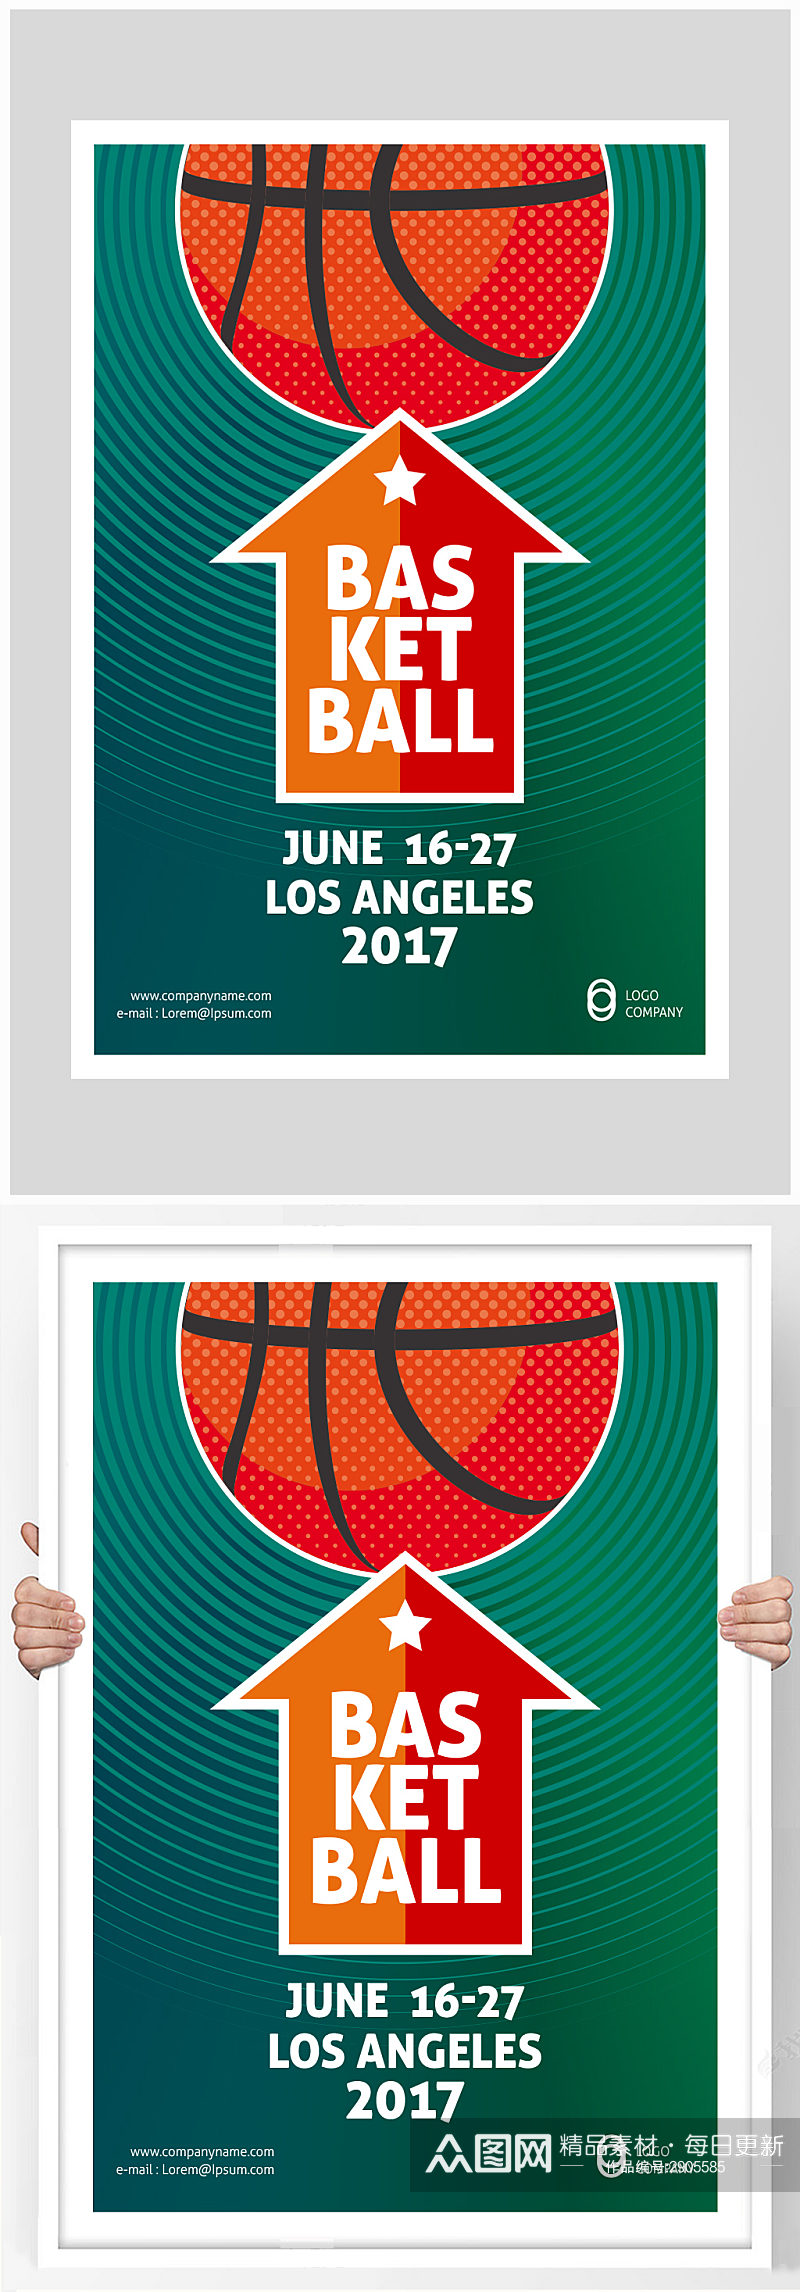 创意高端篮球比赛对决海报设计素材